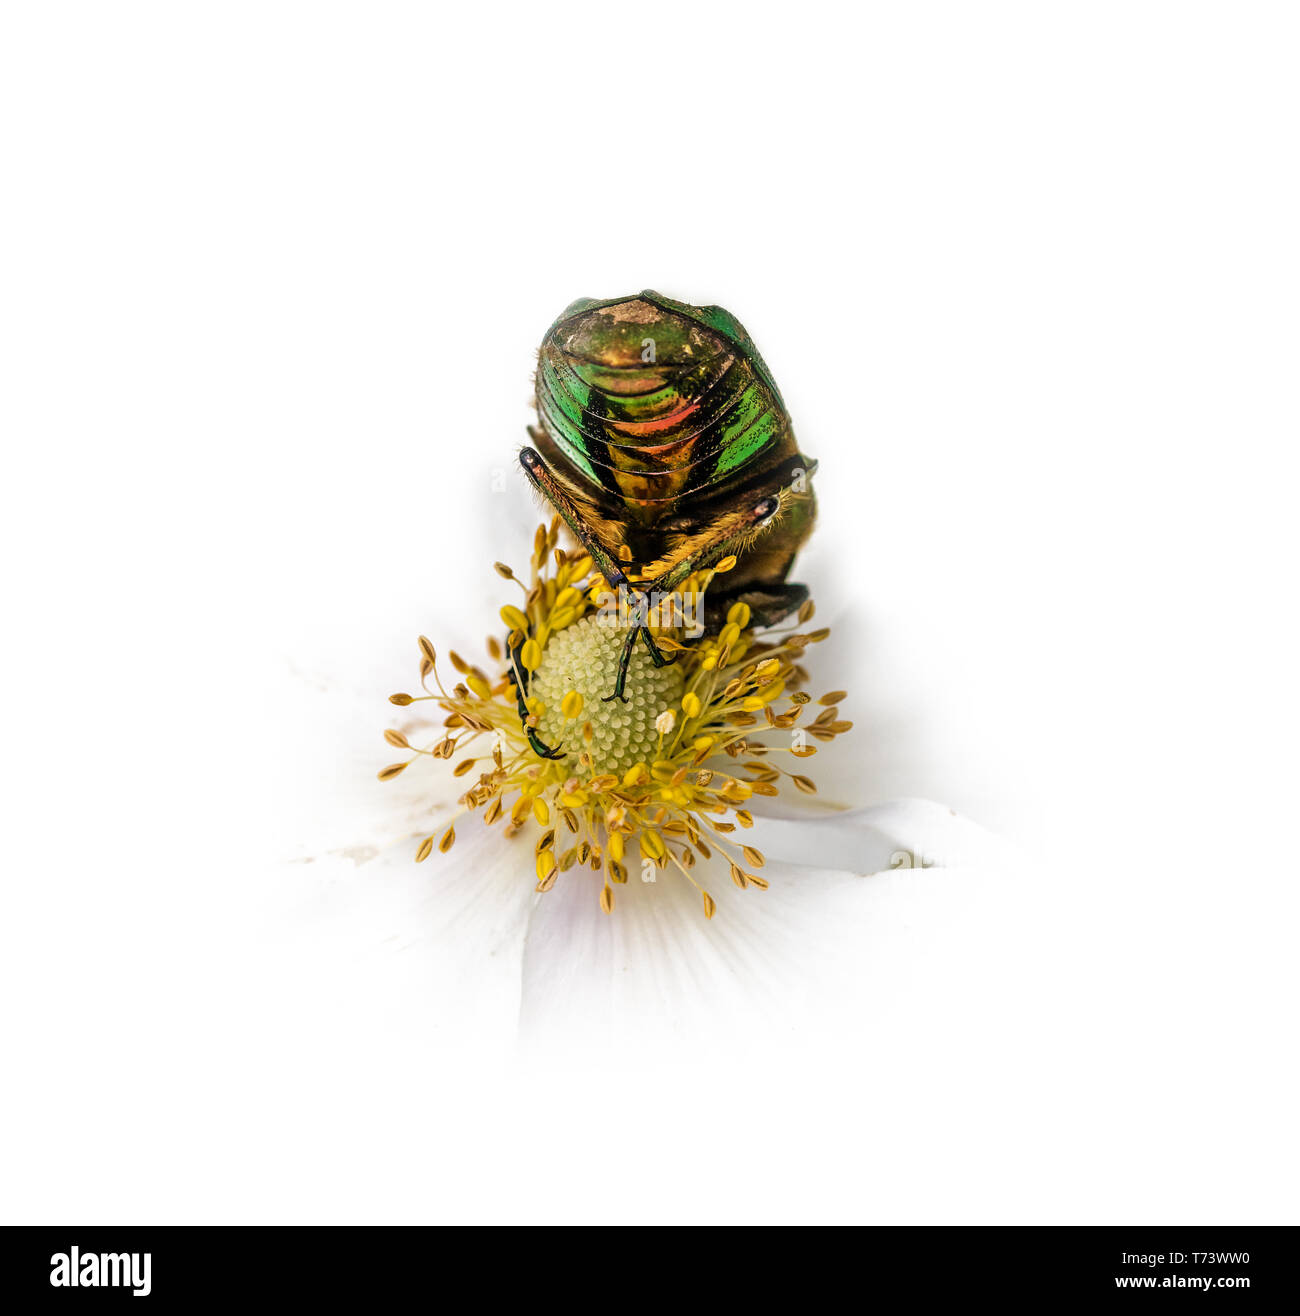 Gold glänzend rose Käfer auf weiße Blüte während des Essens vor weißem Hintergrund Stockfoto